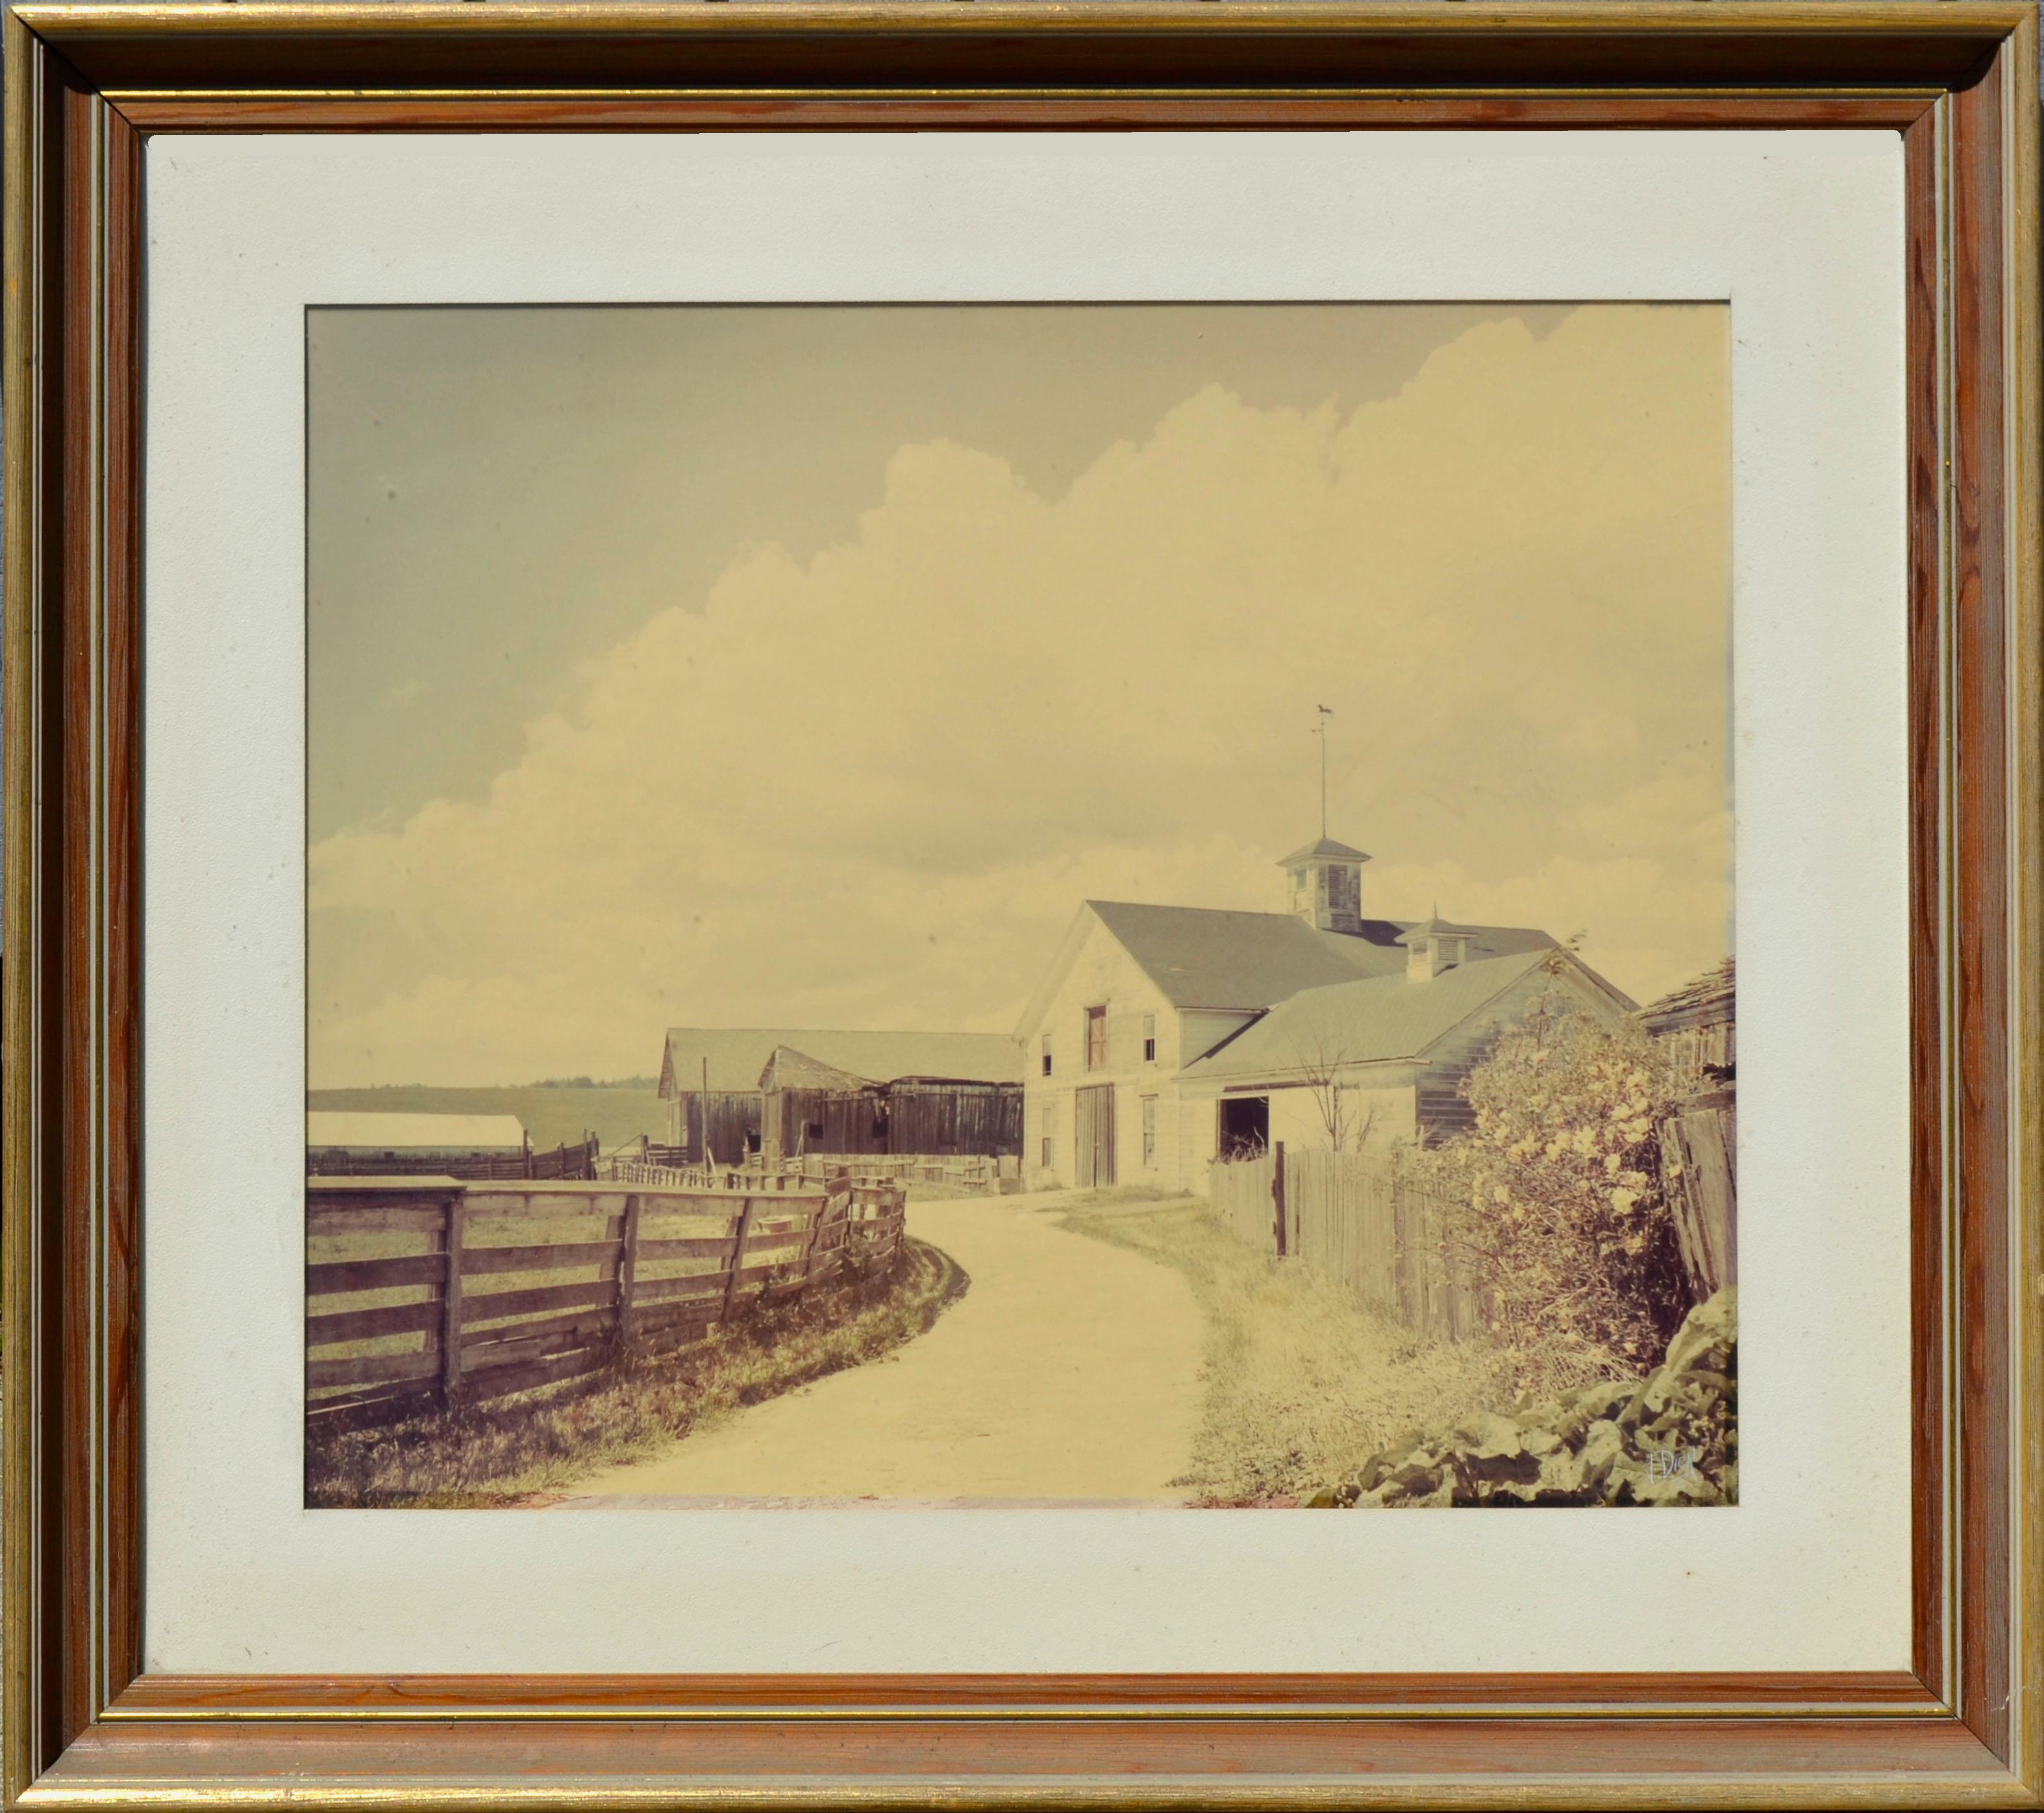 Vester Dick Color Photograph - Mid Century Wilder Ranch Landscape Photograph